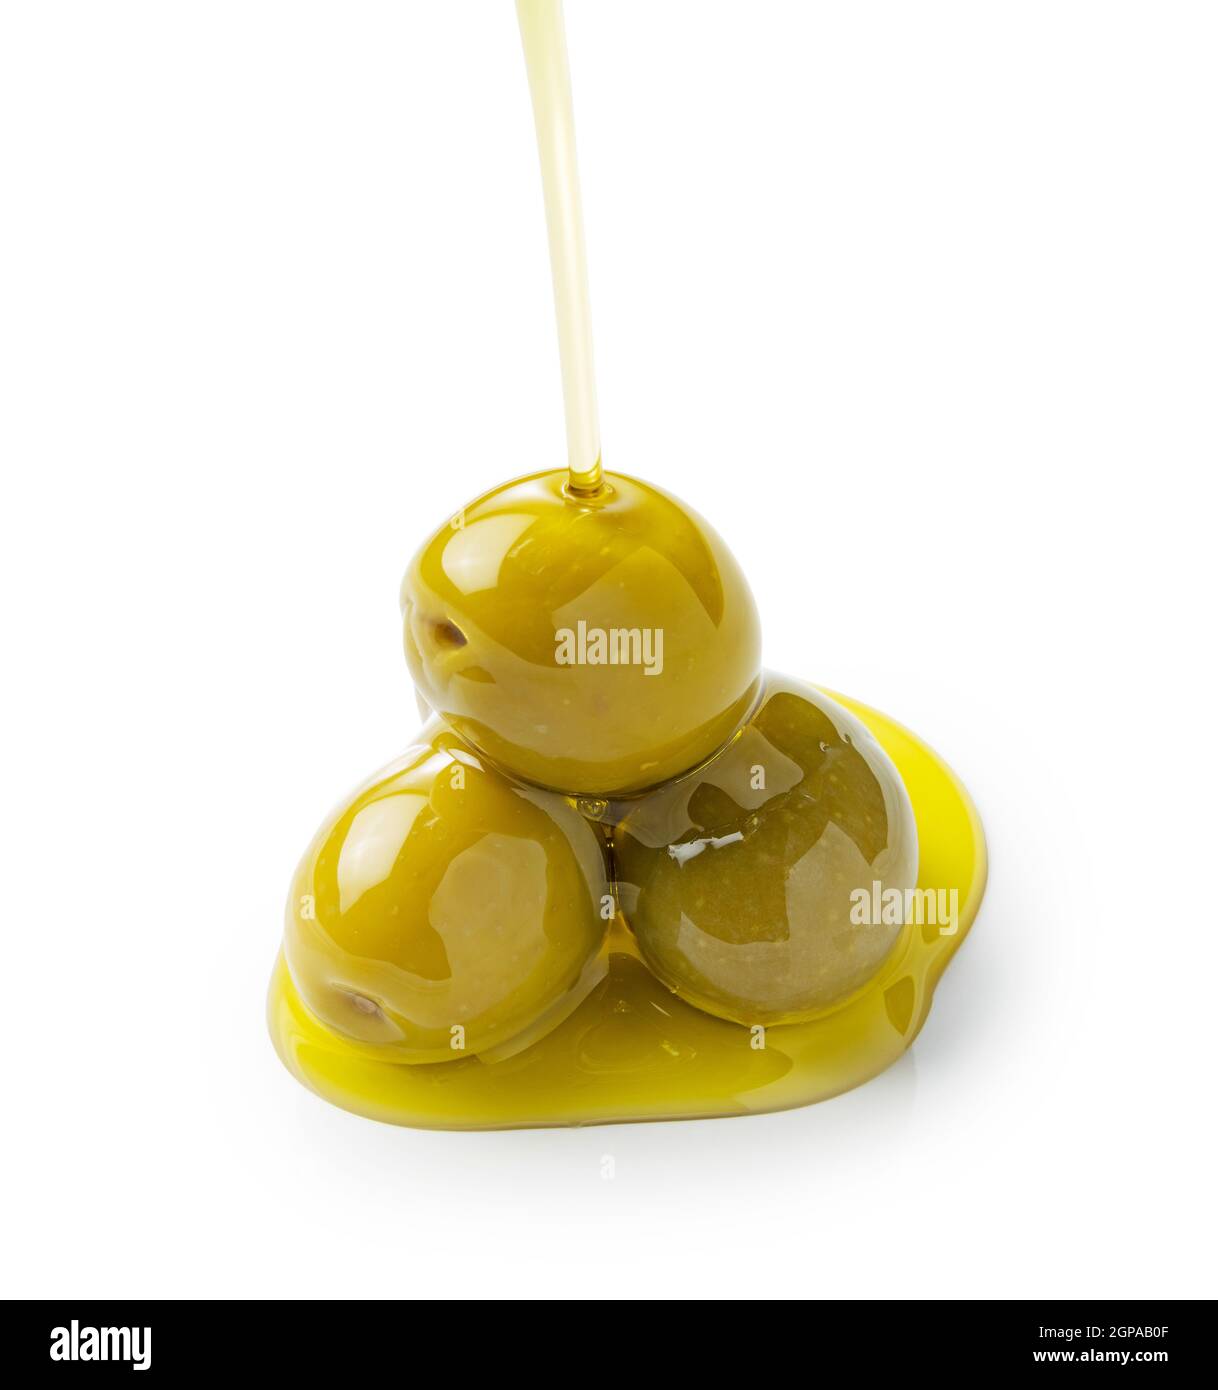 Der Moment, in dem Olivenöl über Oliven gegossen wird, die auf weißem Hintergrund stehen Stockfoto